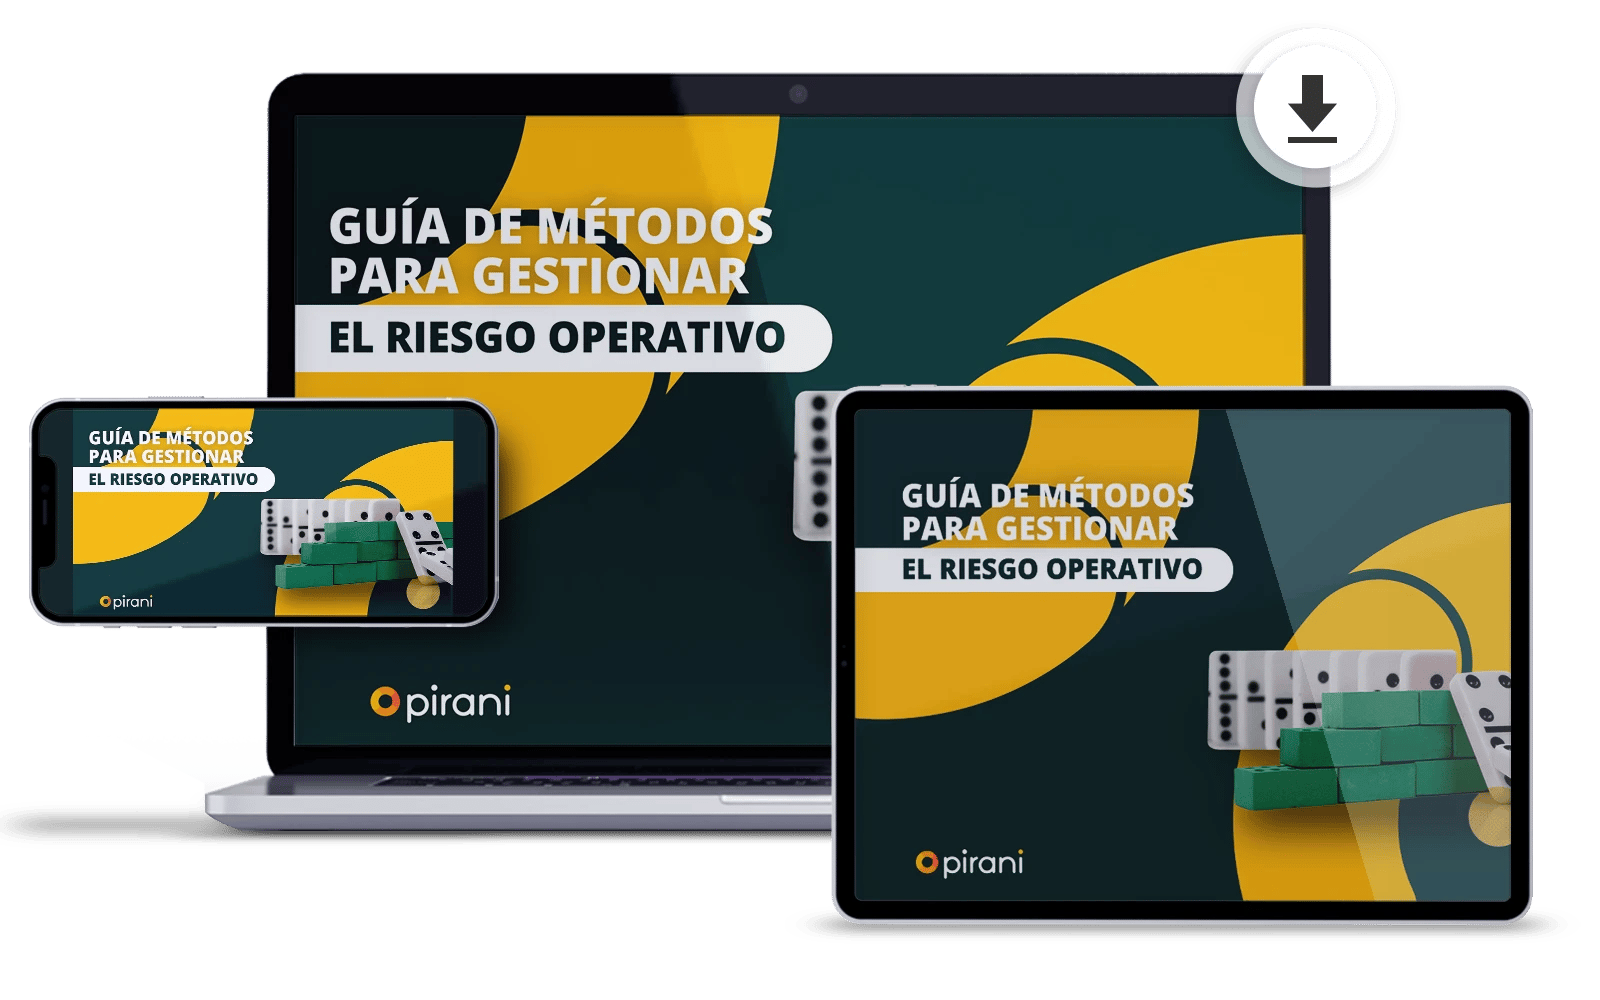 Ebook-download-Guia-de-metodos-para-gestionar-el-riesgo-operativo